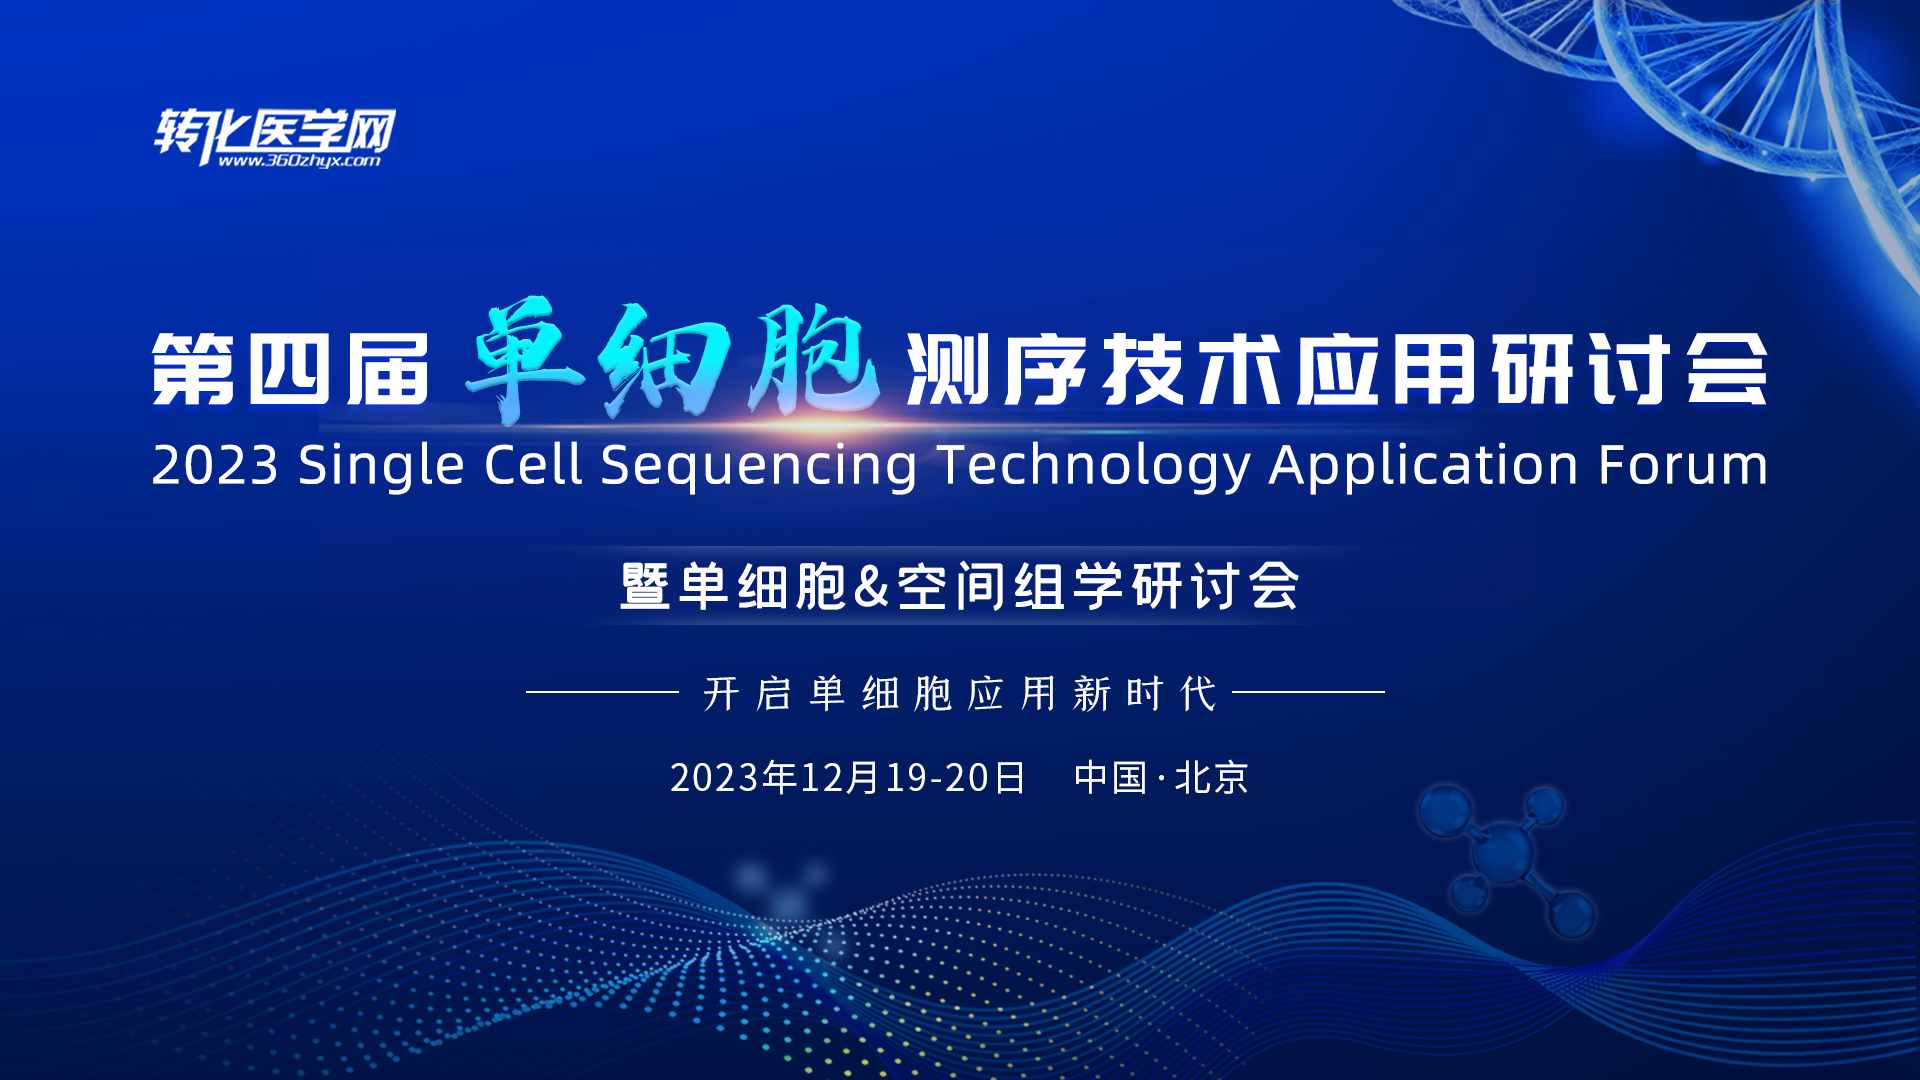 欧易生物邀请您参加2023“第四届单细胞测序技术应用研讨会暨单细胞&空间组学研讨会”